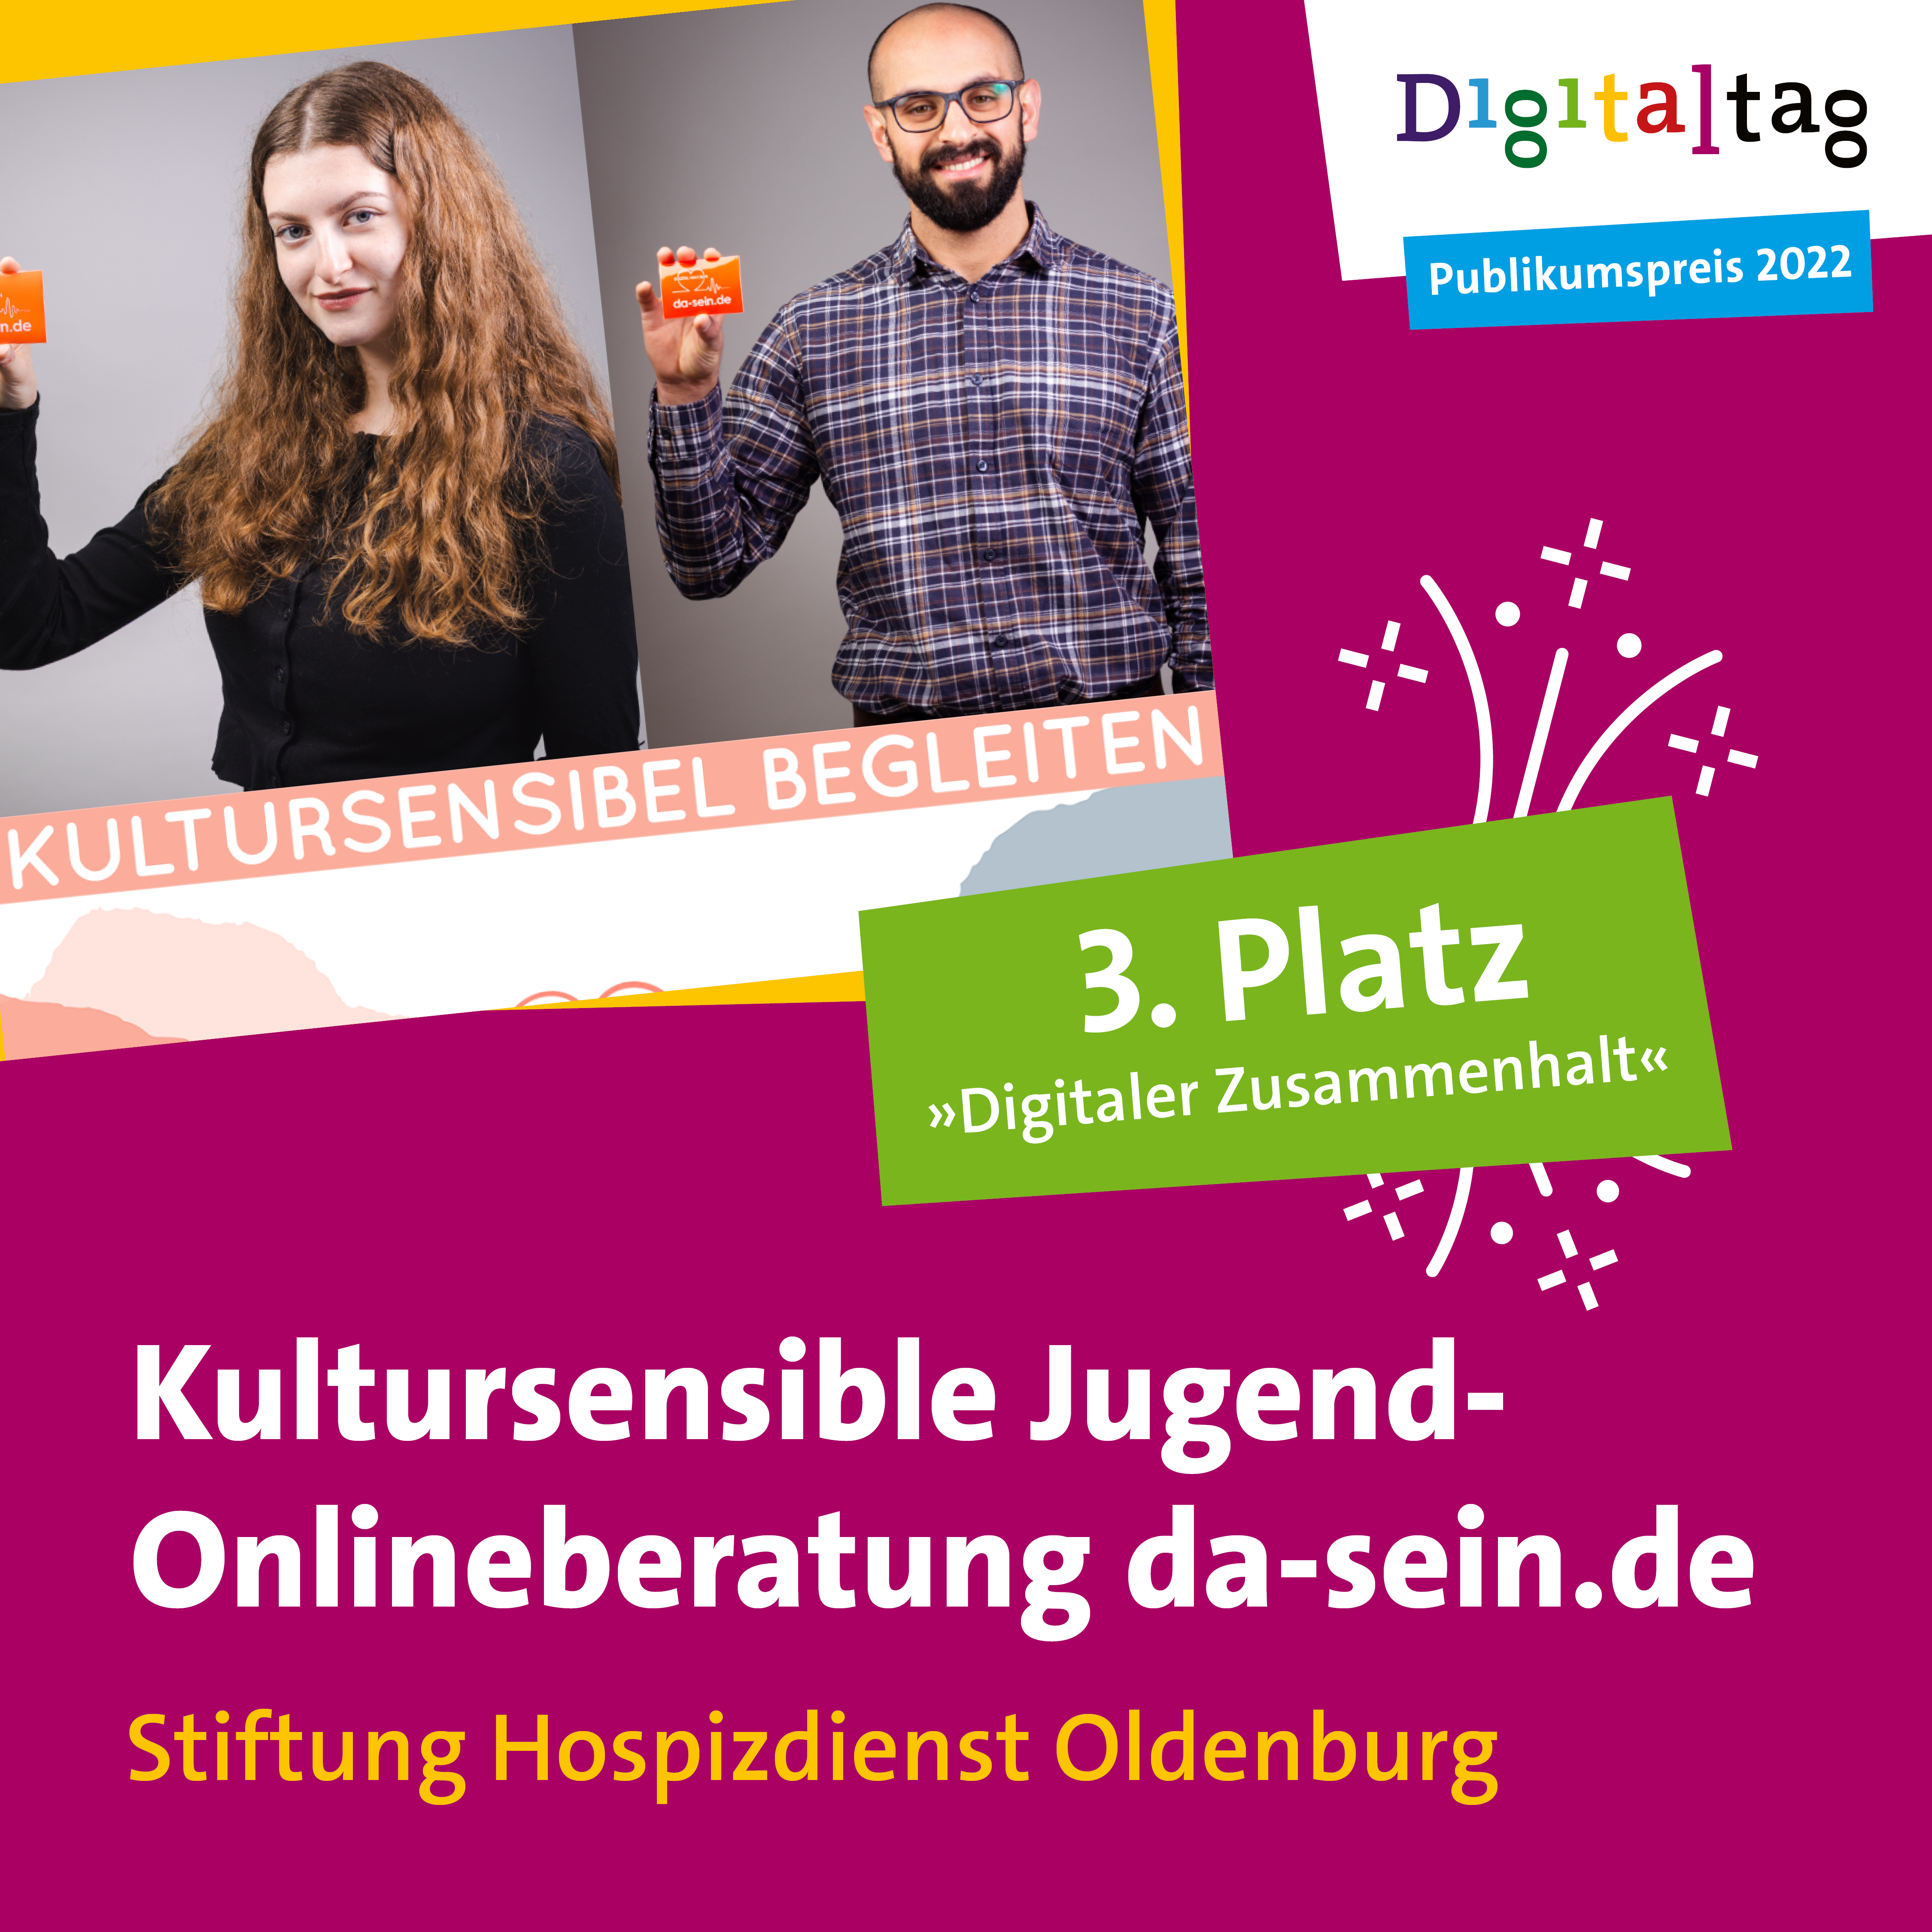 Kultursensible Jugend-Onlineberatung da-sein.de